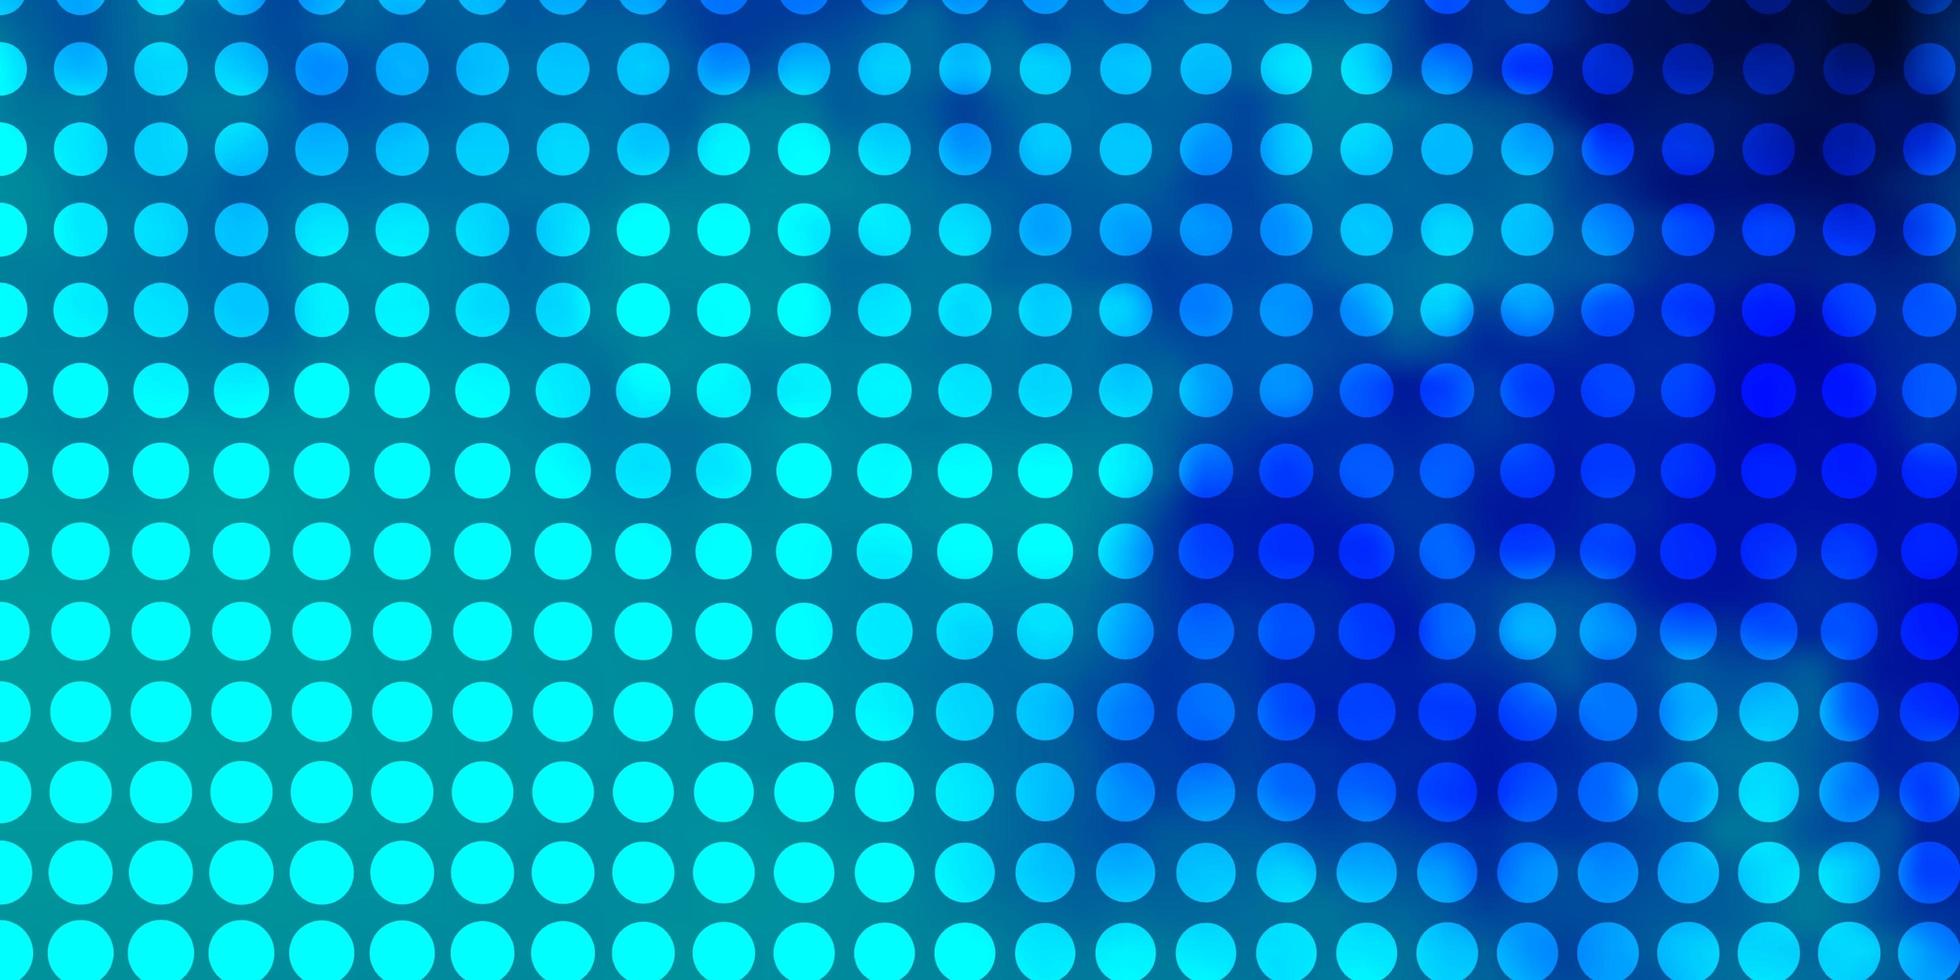 hellrosa, blauer Vektorhintergrund mit Kreisen. vektor